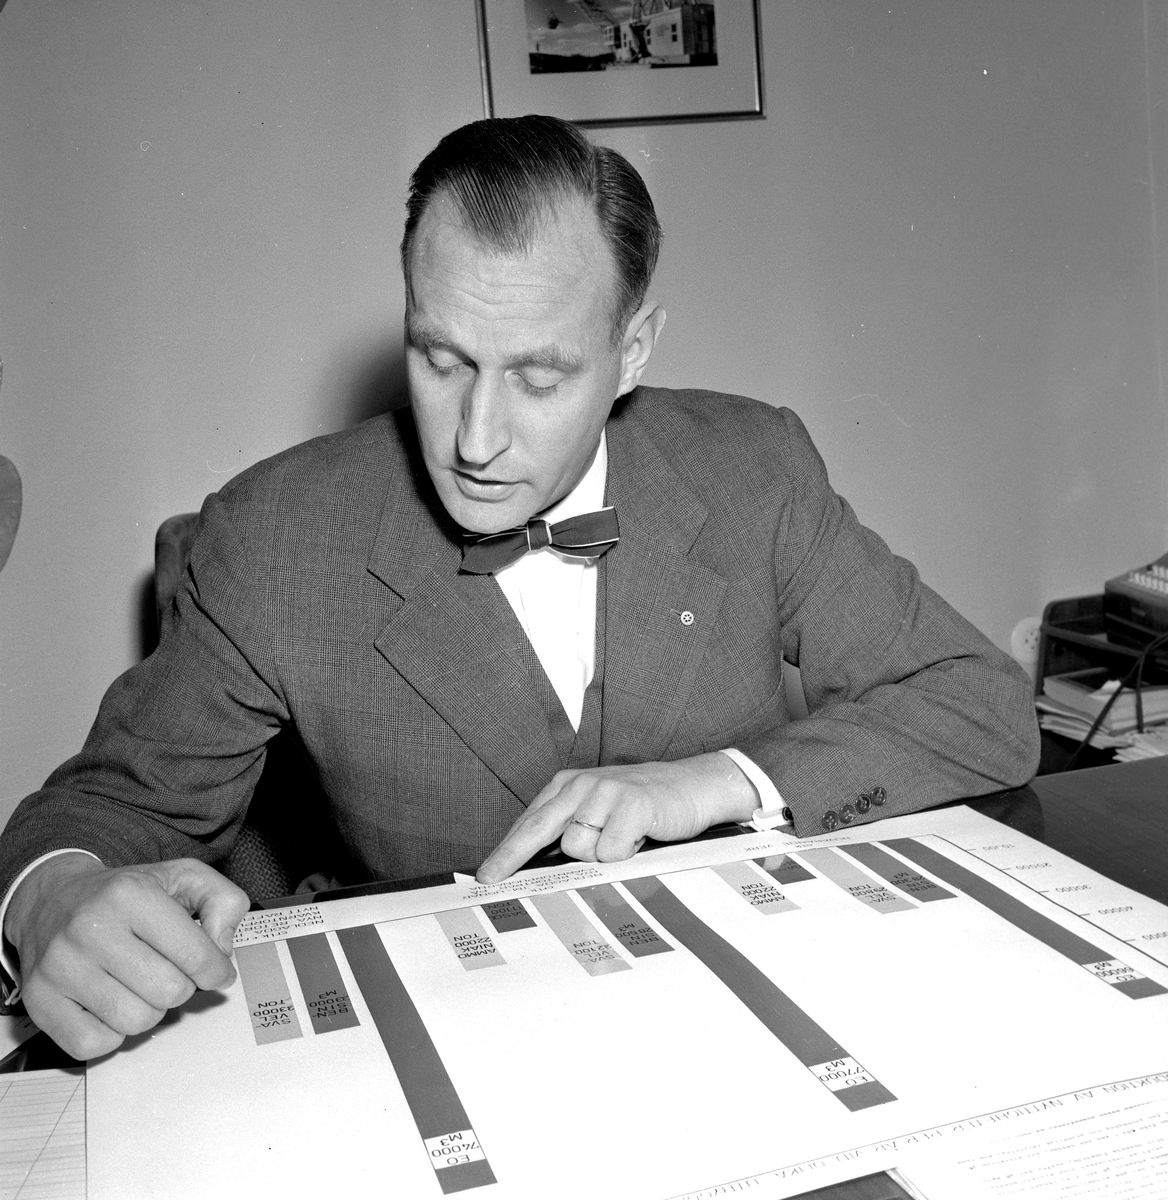 Direktör Hedbäck, Kvarntorp.
November 1956.